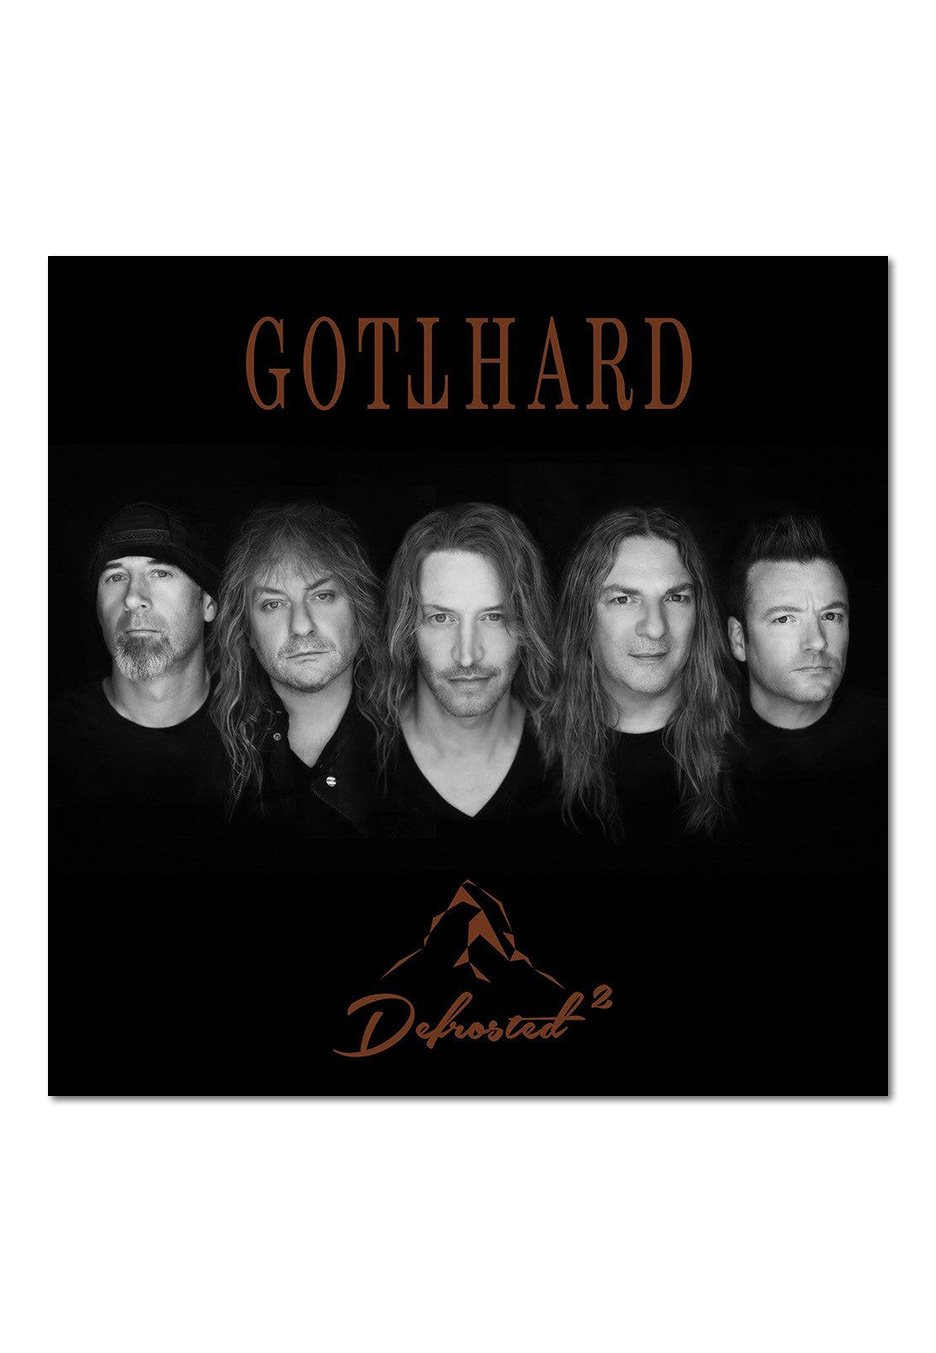 Gotthard - Defrosted 2 Digibook - Digipak 2 CD